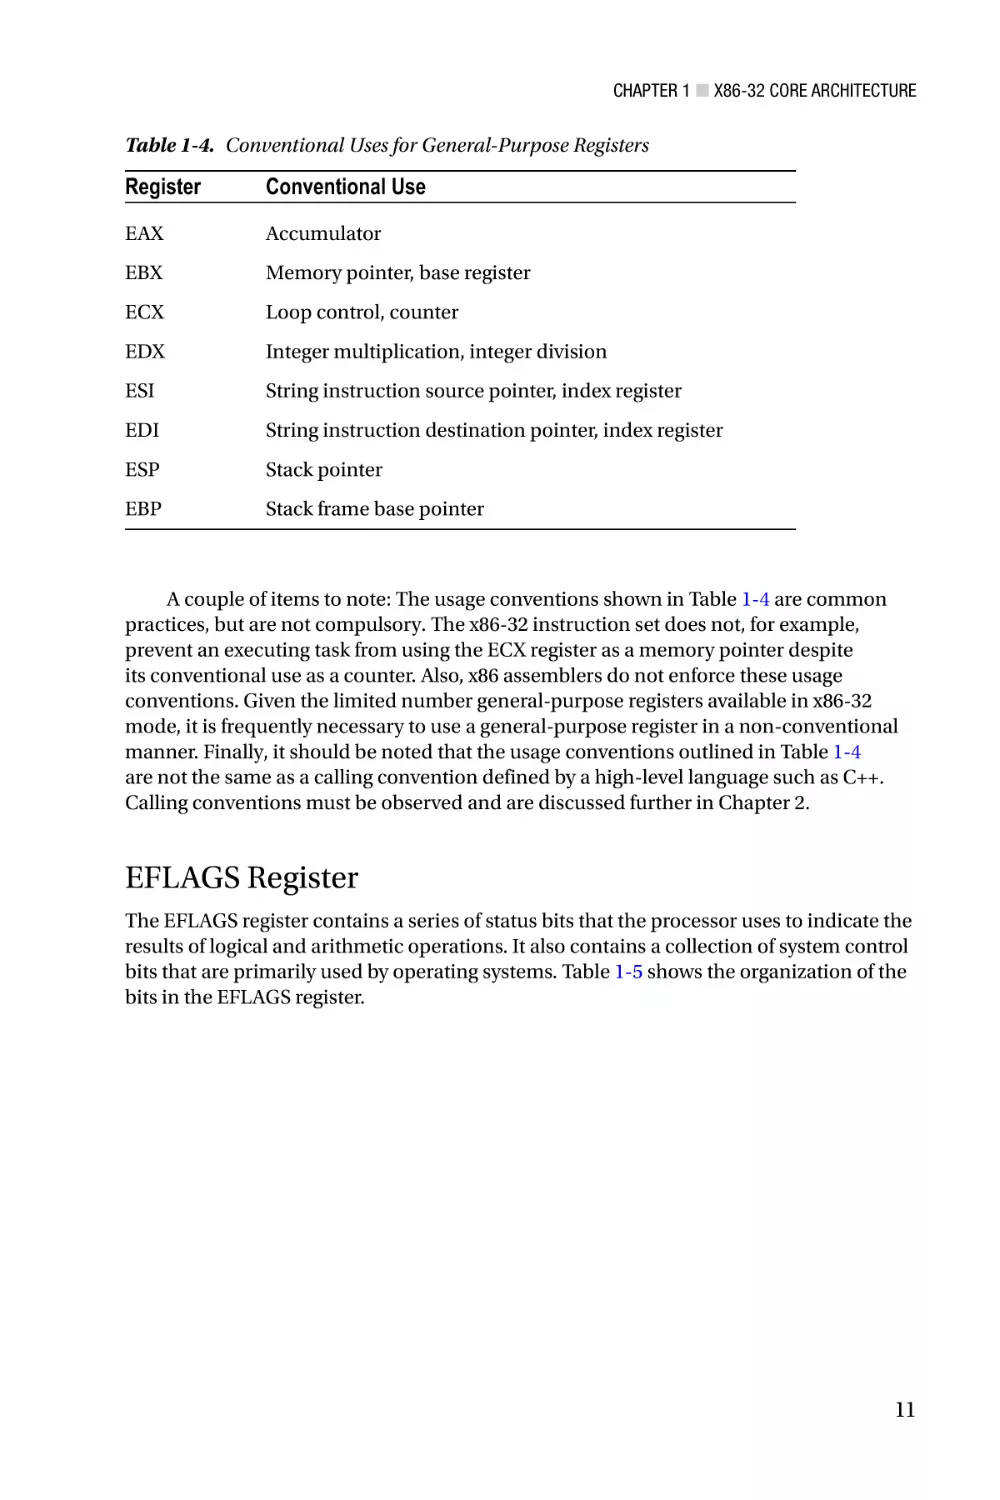 EFLAGS Register